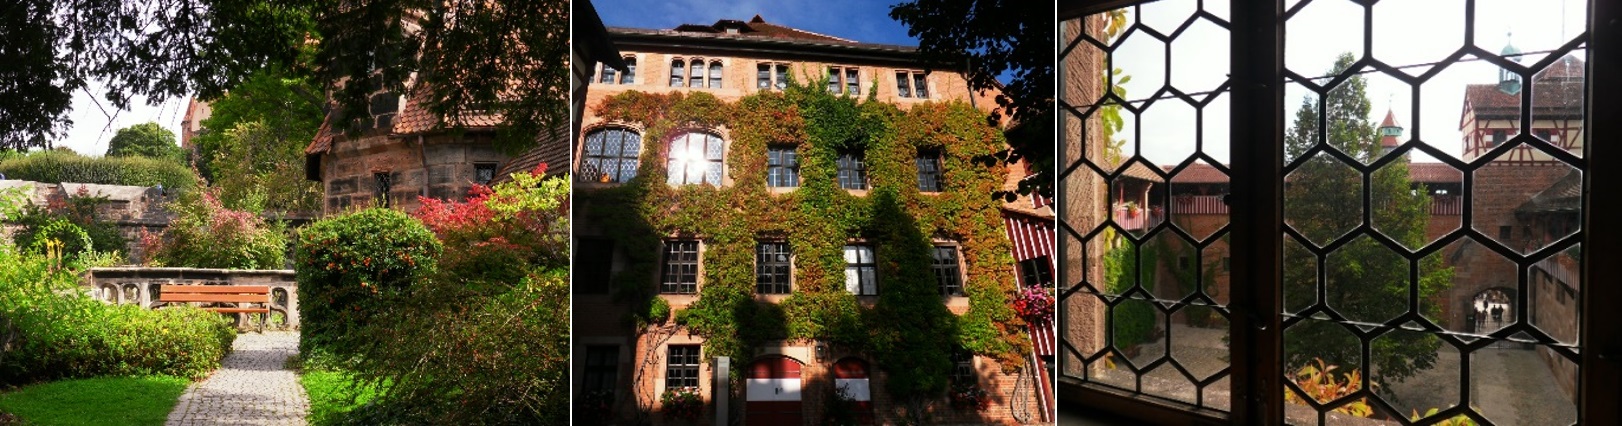 Die Kaiserburg – Burgarten, Fassade, Innenhof